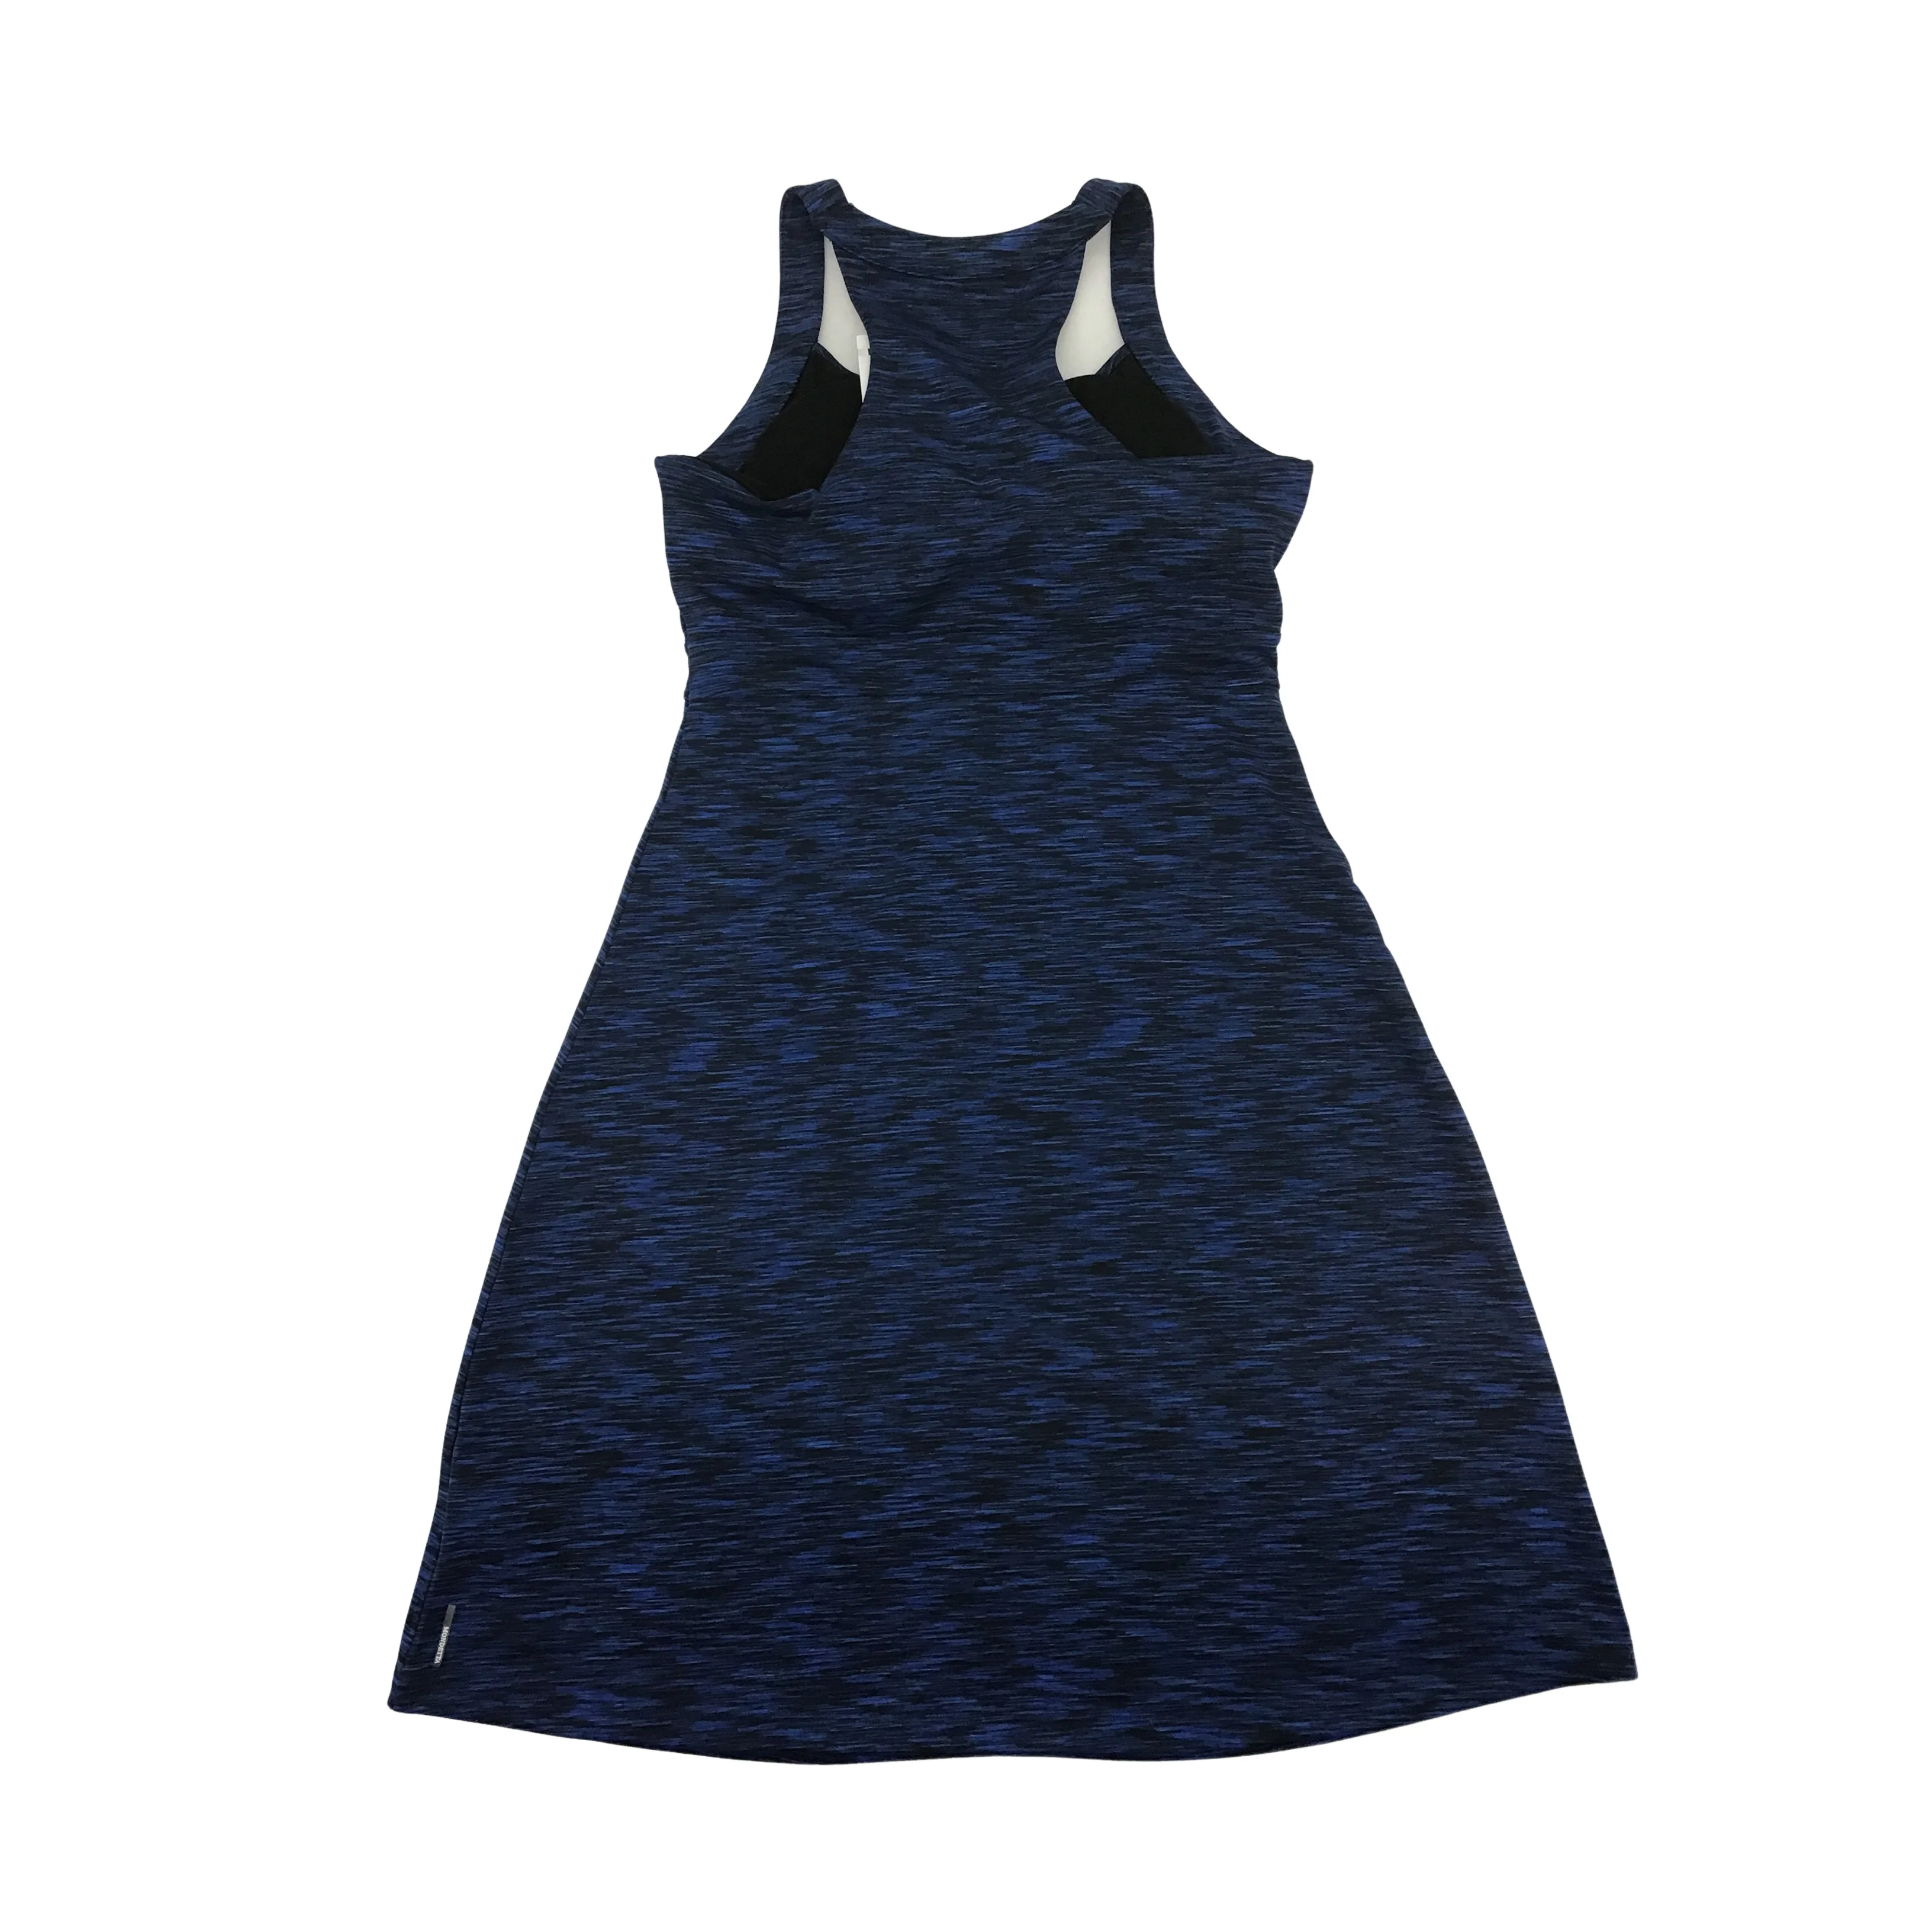 Mondetta : Women's Dress / Active / Blue / Small